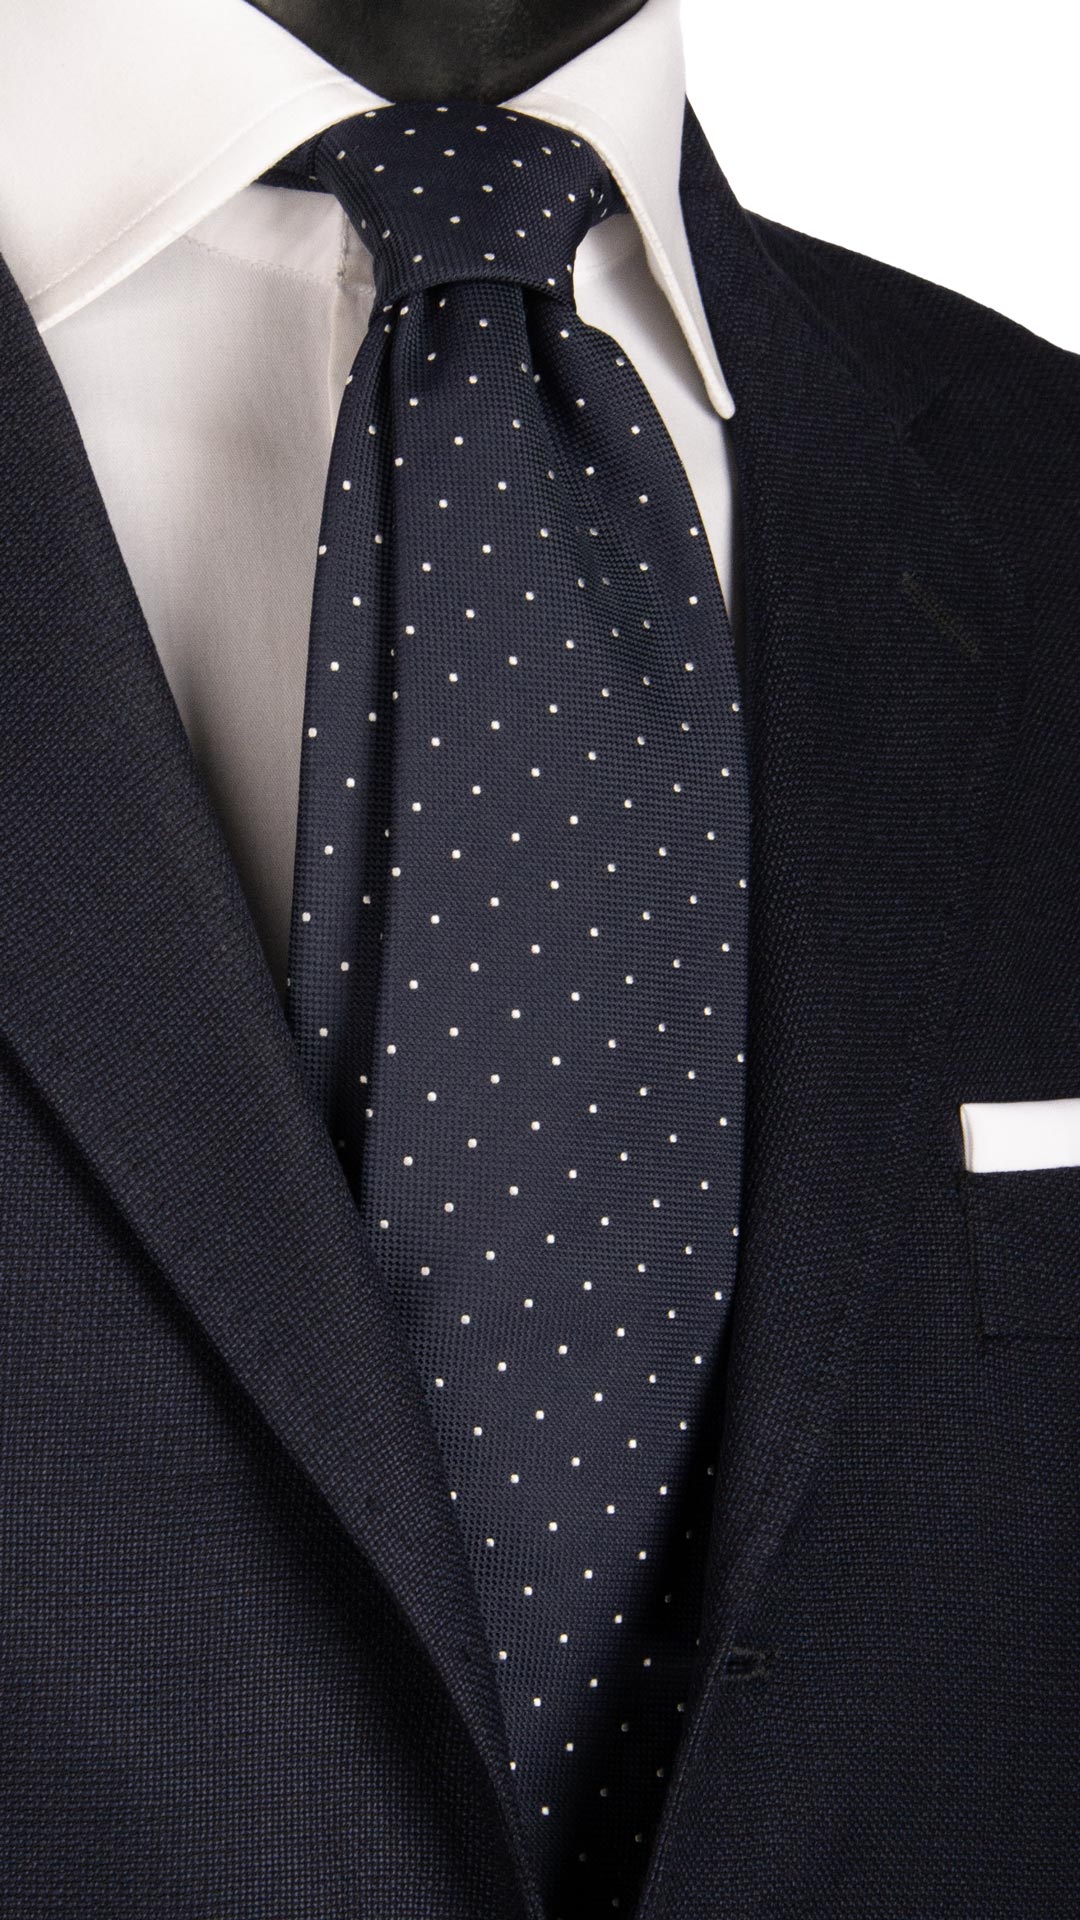 Cravatta da Cerimonia di Seta Blu a Pois Bianchi CY6638 Made in Italy Graffeo Cravatte